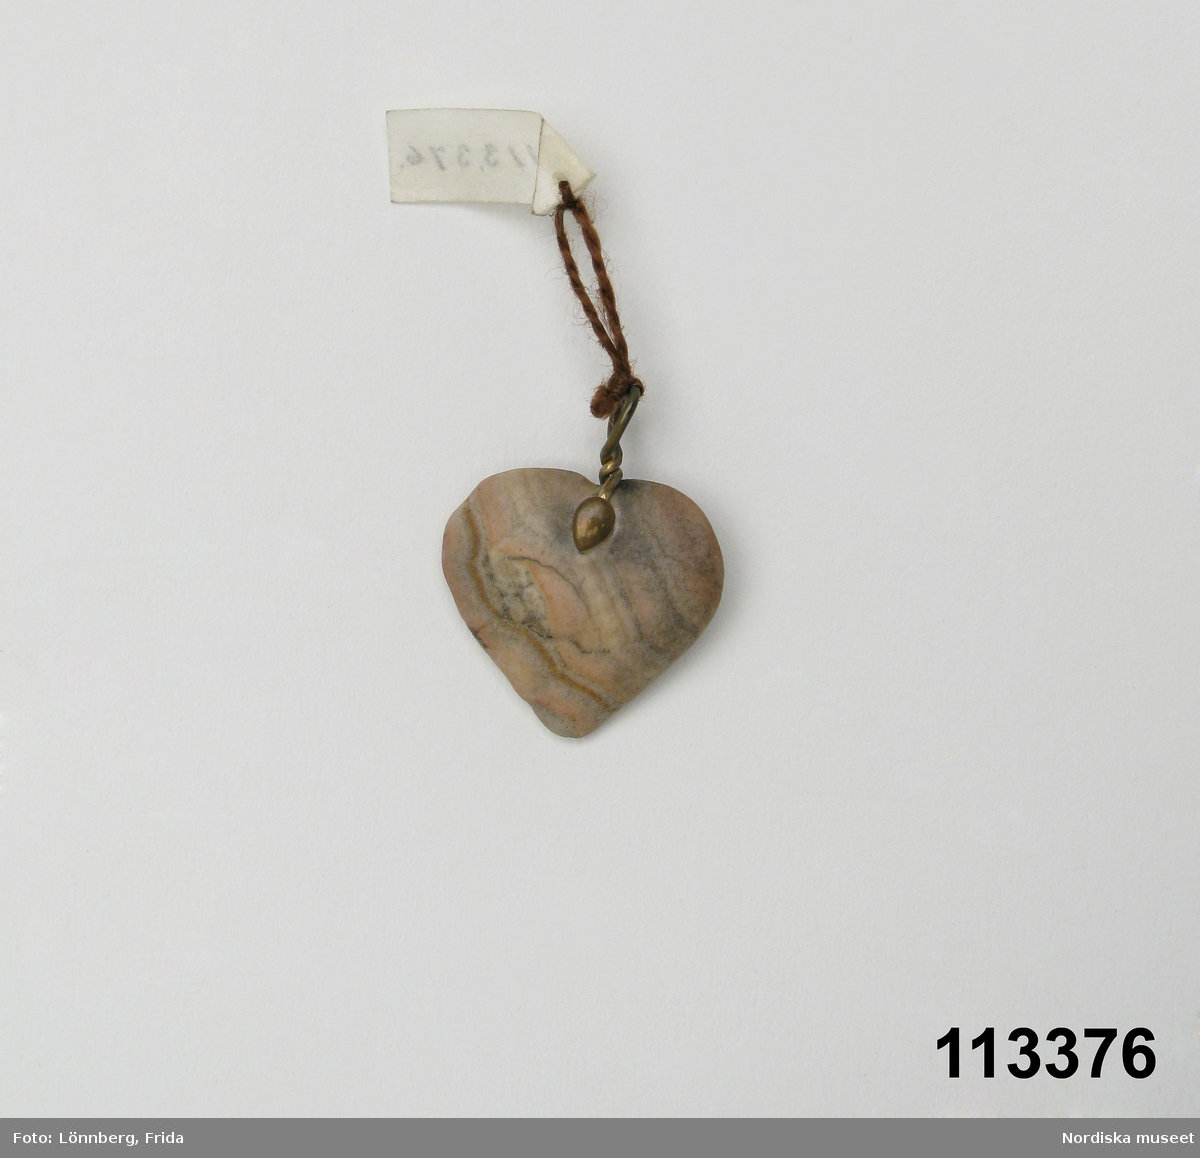 Huvudliggaren:
"Berlock av sten, hjärtformig med hängögla av koppar.
G. 6/4 1909 Elving, Anna Gunborg, fröken, Stockholm."